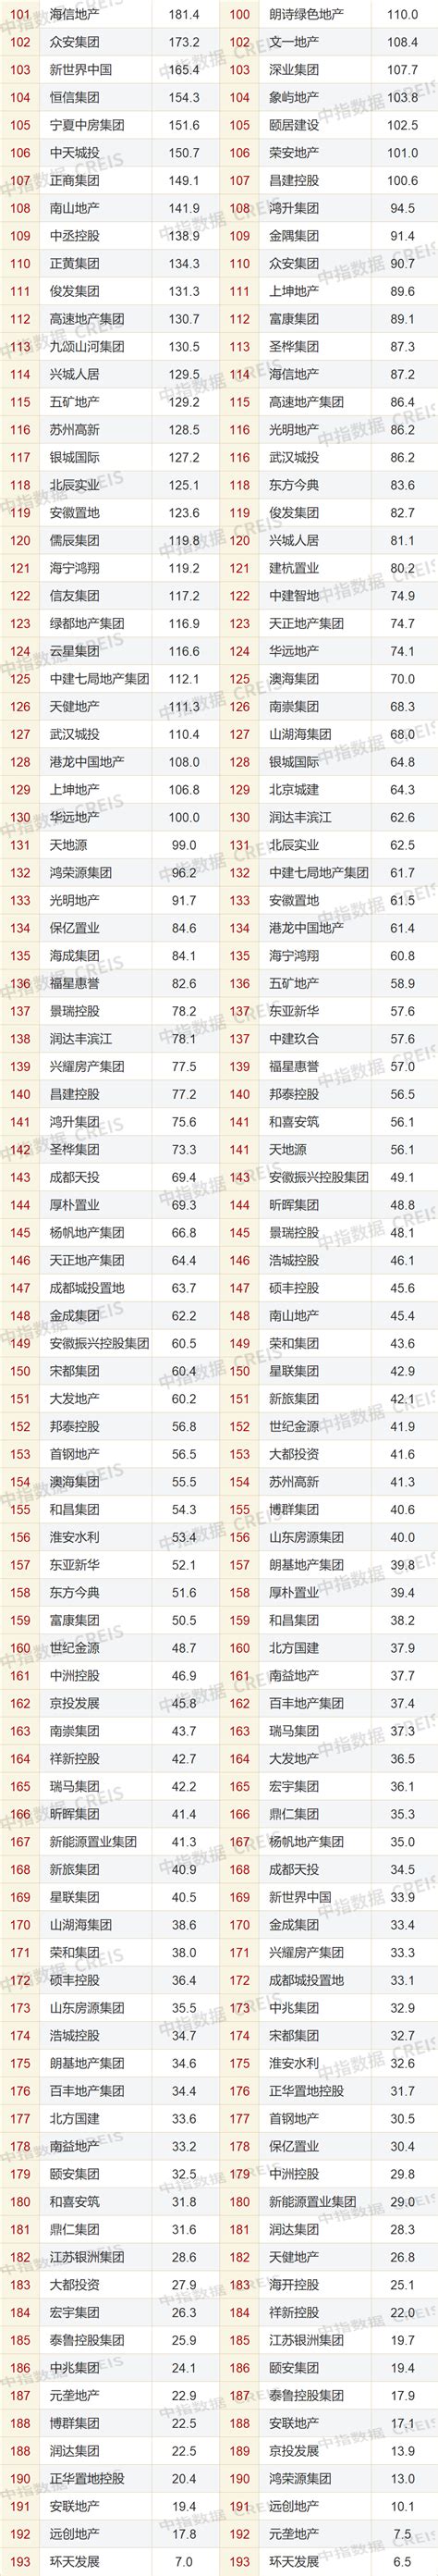 2022年1月中国房地产企业销售业绩排行榜-房产频道-和讯网